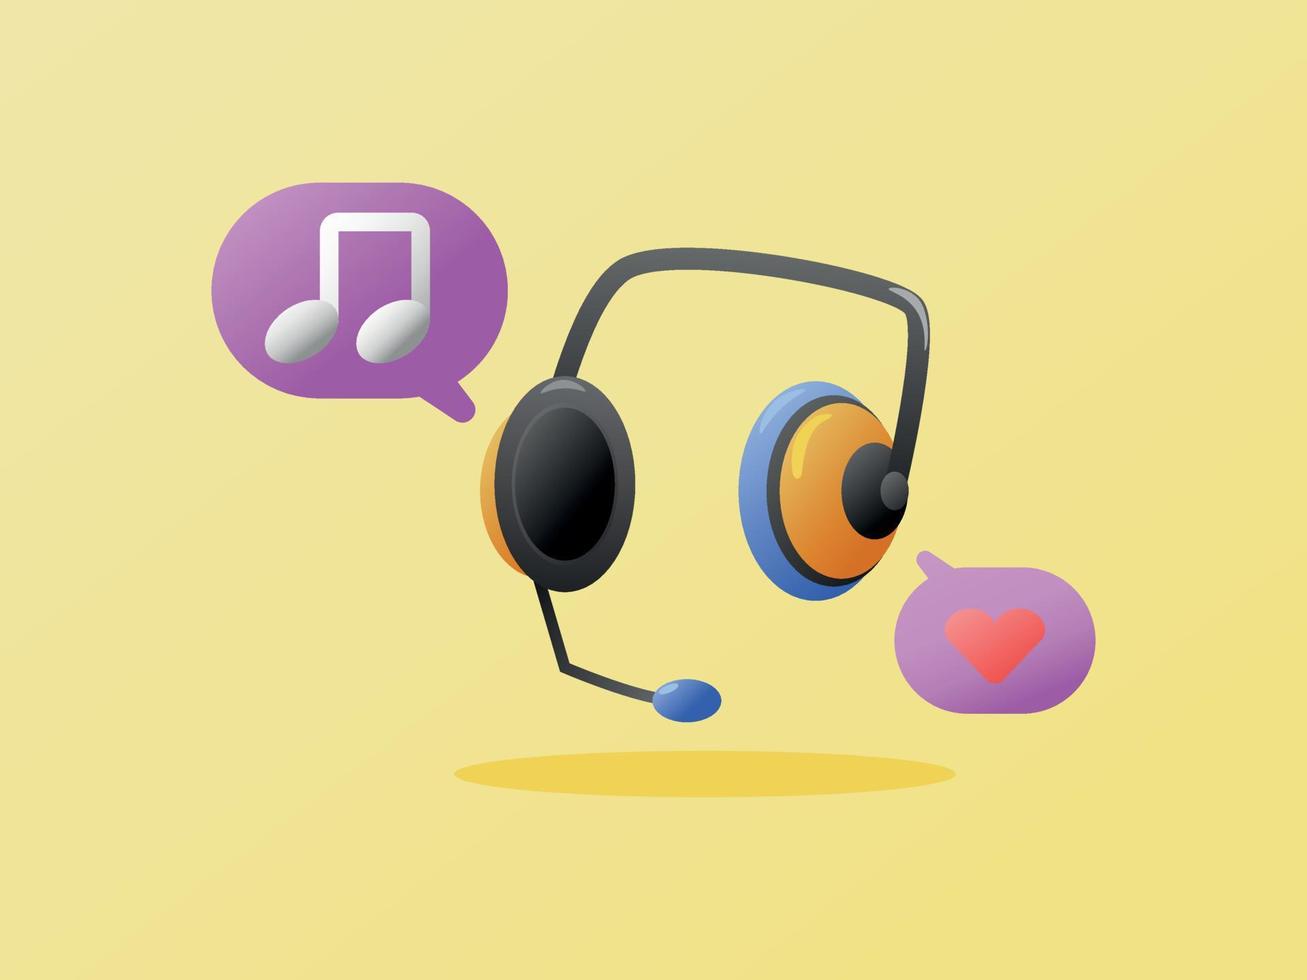 ilustração de fone de ouvido 3d com música tocando ícone minimalista moderno de texto explicativo roxo vetor